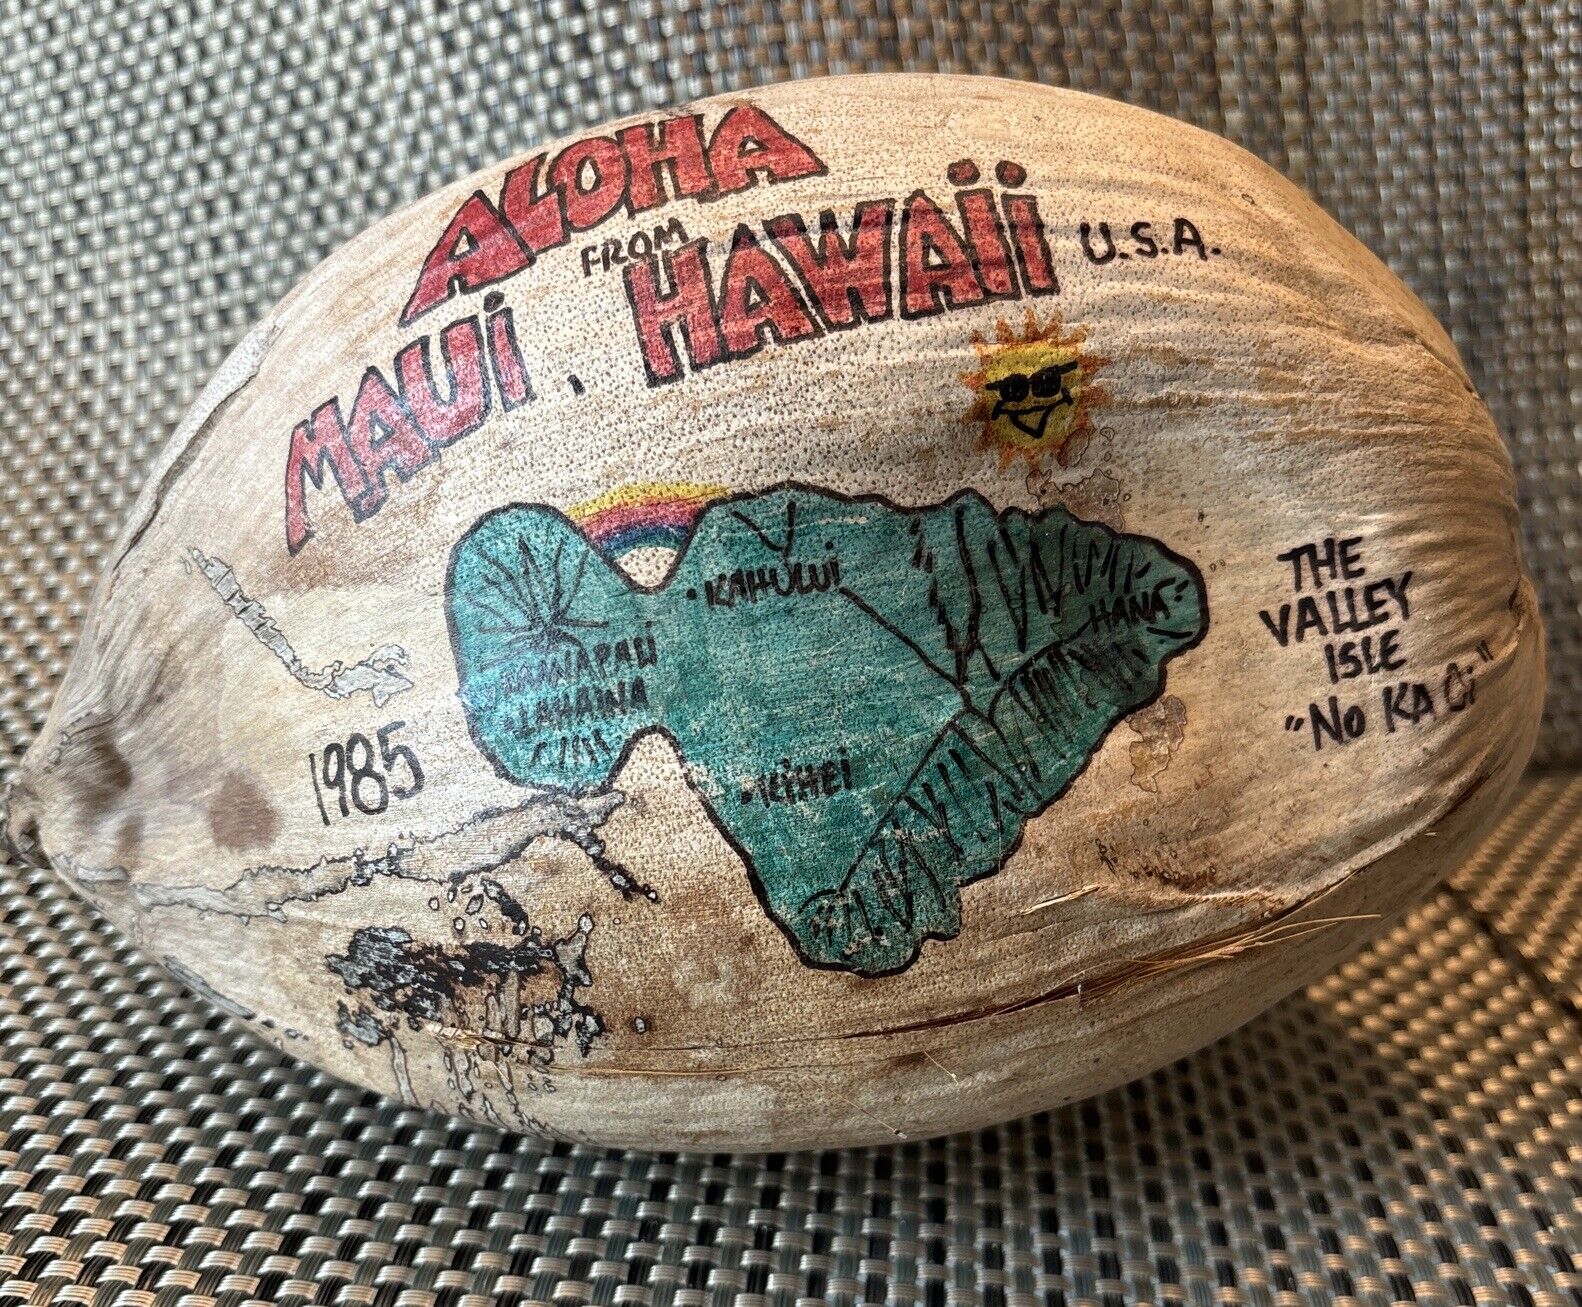 Aloha from Maui Hawaii Souvenir Painted Coconut 1985 The Valley Isle “No Ka Oi”